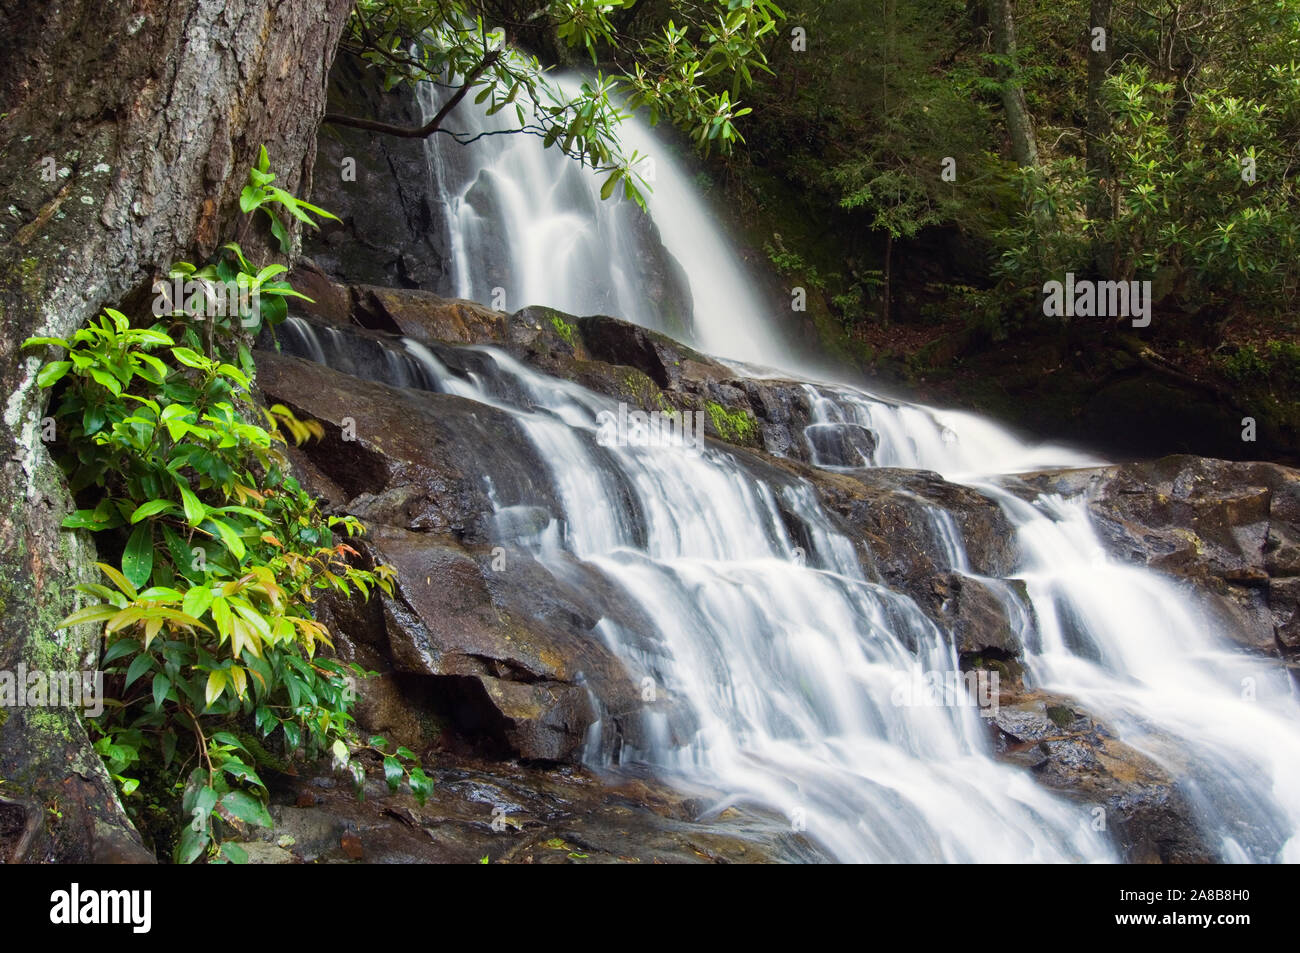 Paesaggio con cascata nella foresta, Laurel Creek Falls, Great Smoky Mountains National Park, Tennessee, Stati Uniti d'America Foto Stock